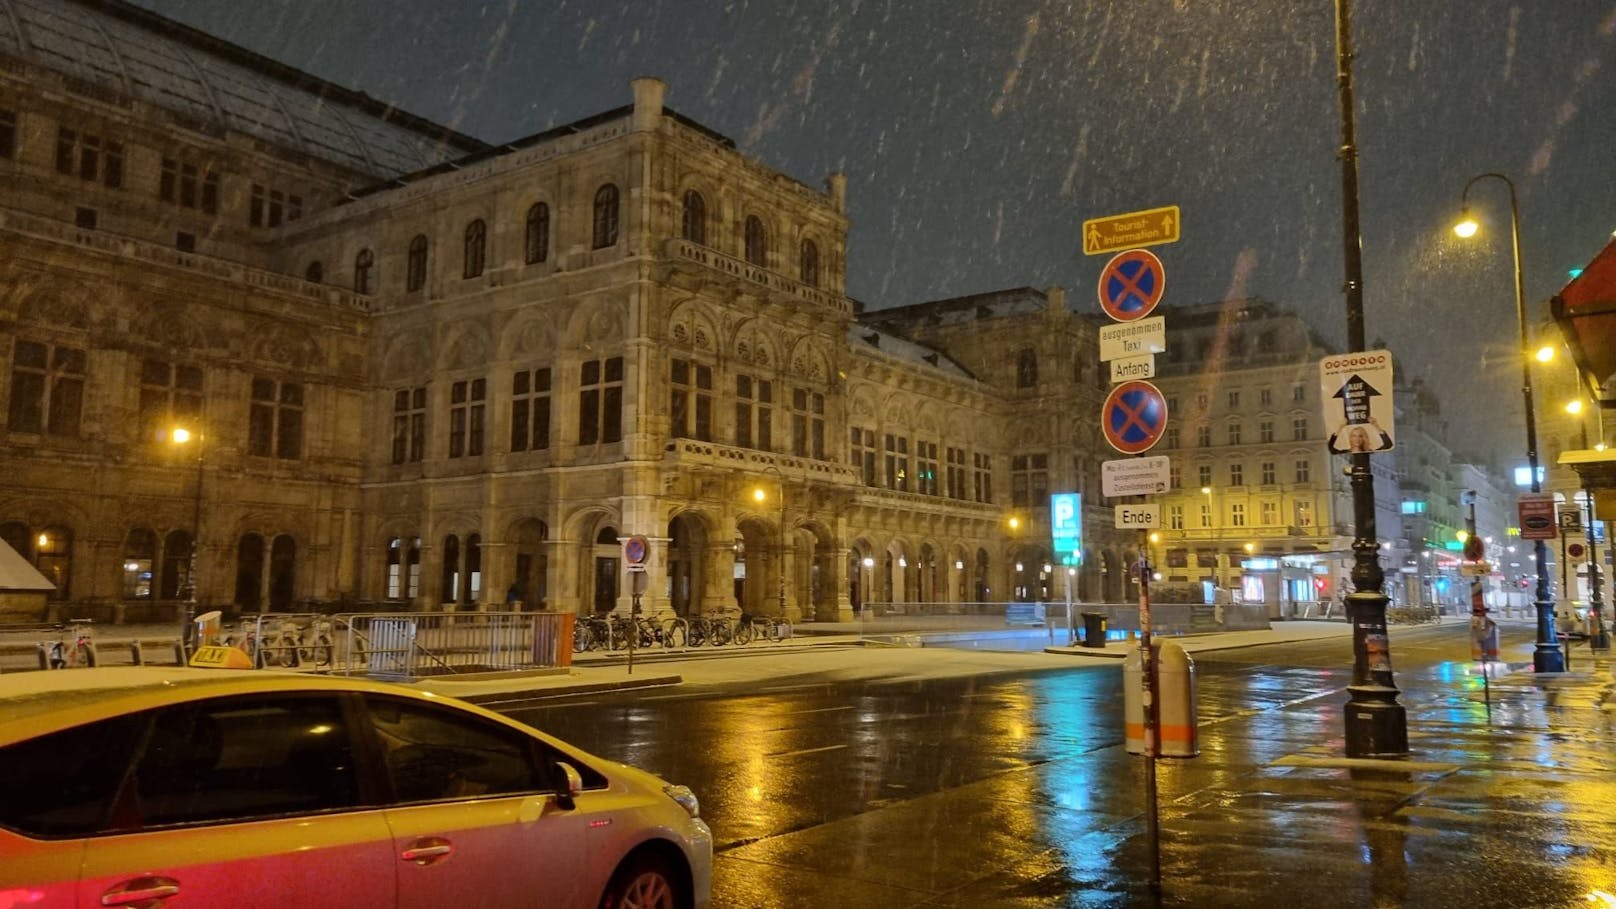 Wintereinbruch am Samstag in Wien! Eine Schnee-Walze ist über die Bundesstadt gerollt und hat sie weiß gefärbt. In mehreren Bezirken liegt Schnee.